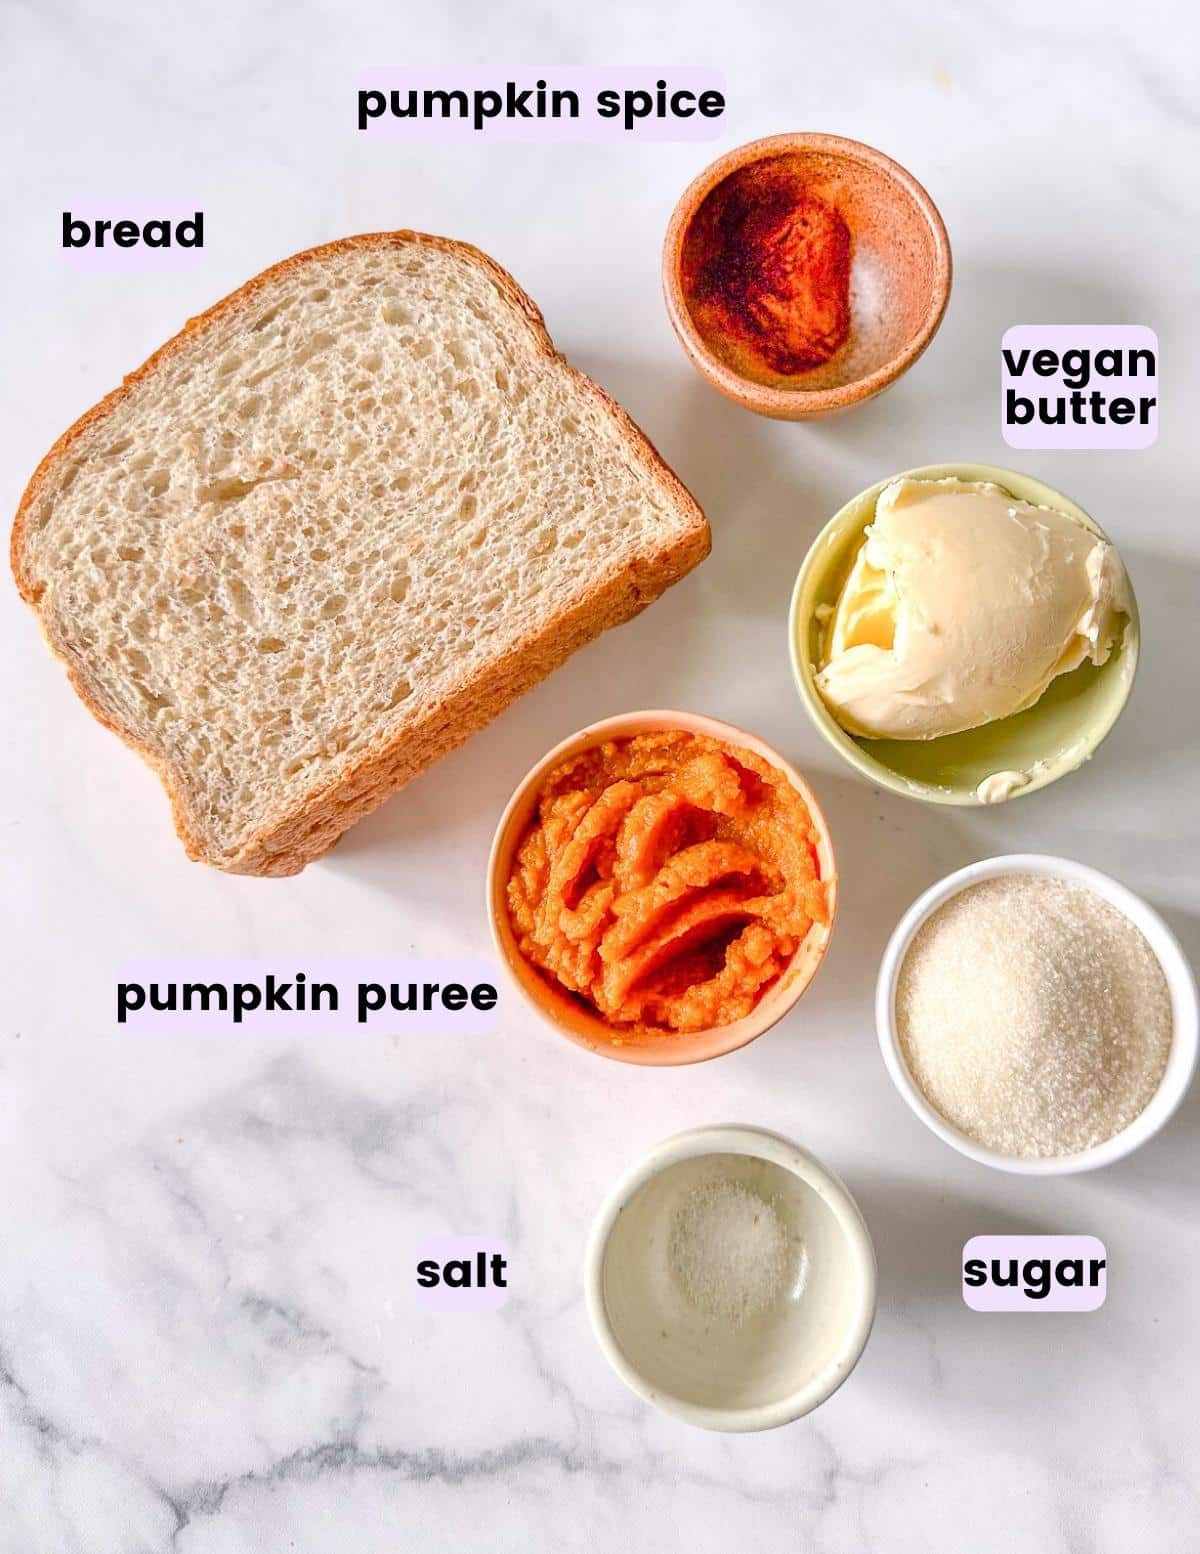 bread, pumpkin spice, vegan butter, pumpkin puree, sugar, salt.